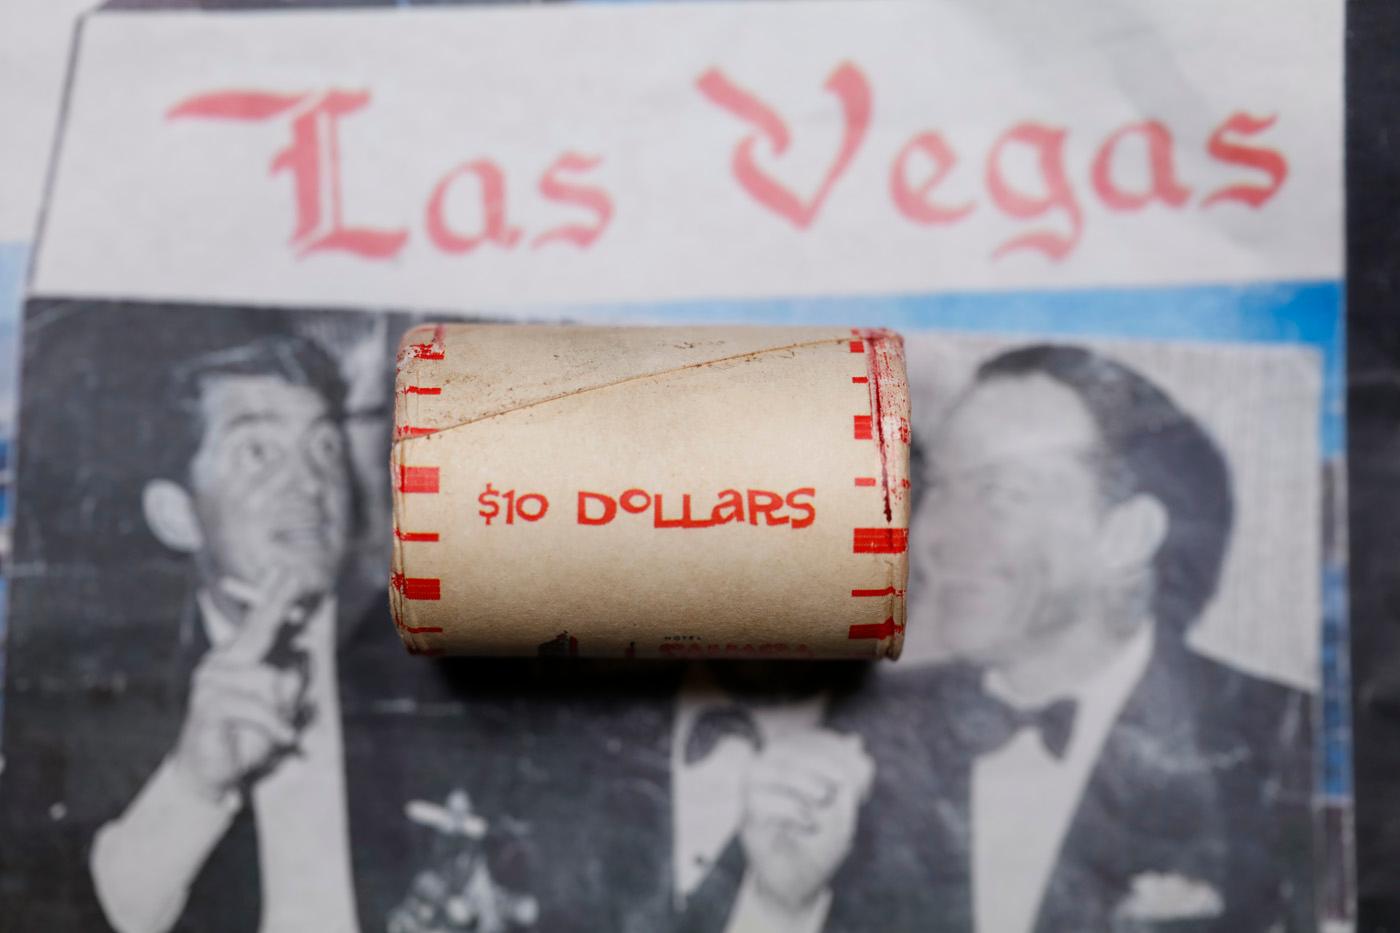 ***Auction Highlight*** Old Casino 50c Roll $10 Halves Las Vegas Casino Sahara 1944 walker & P frank